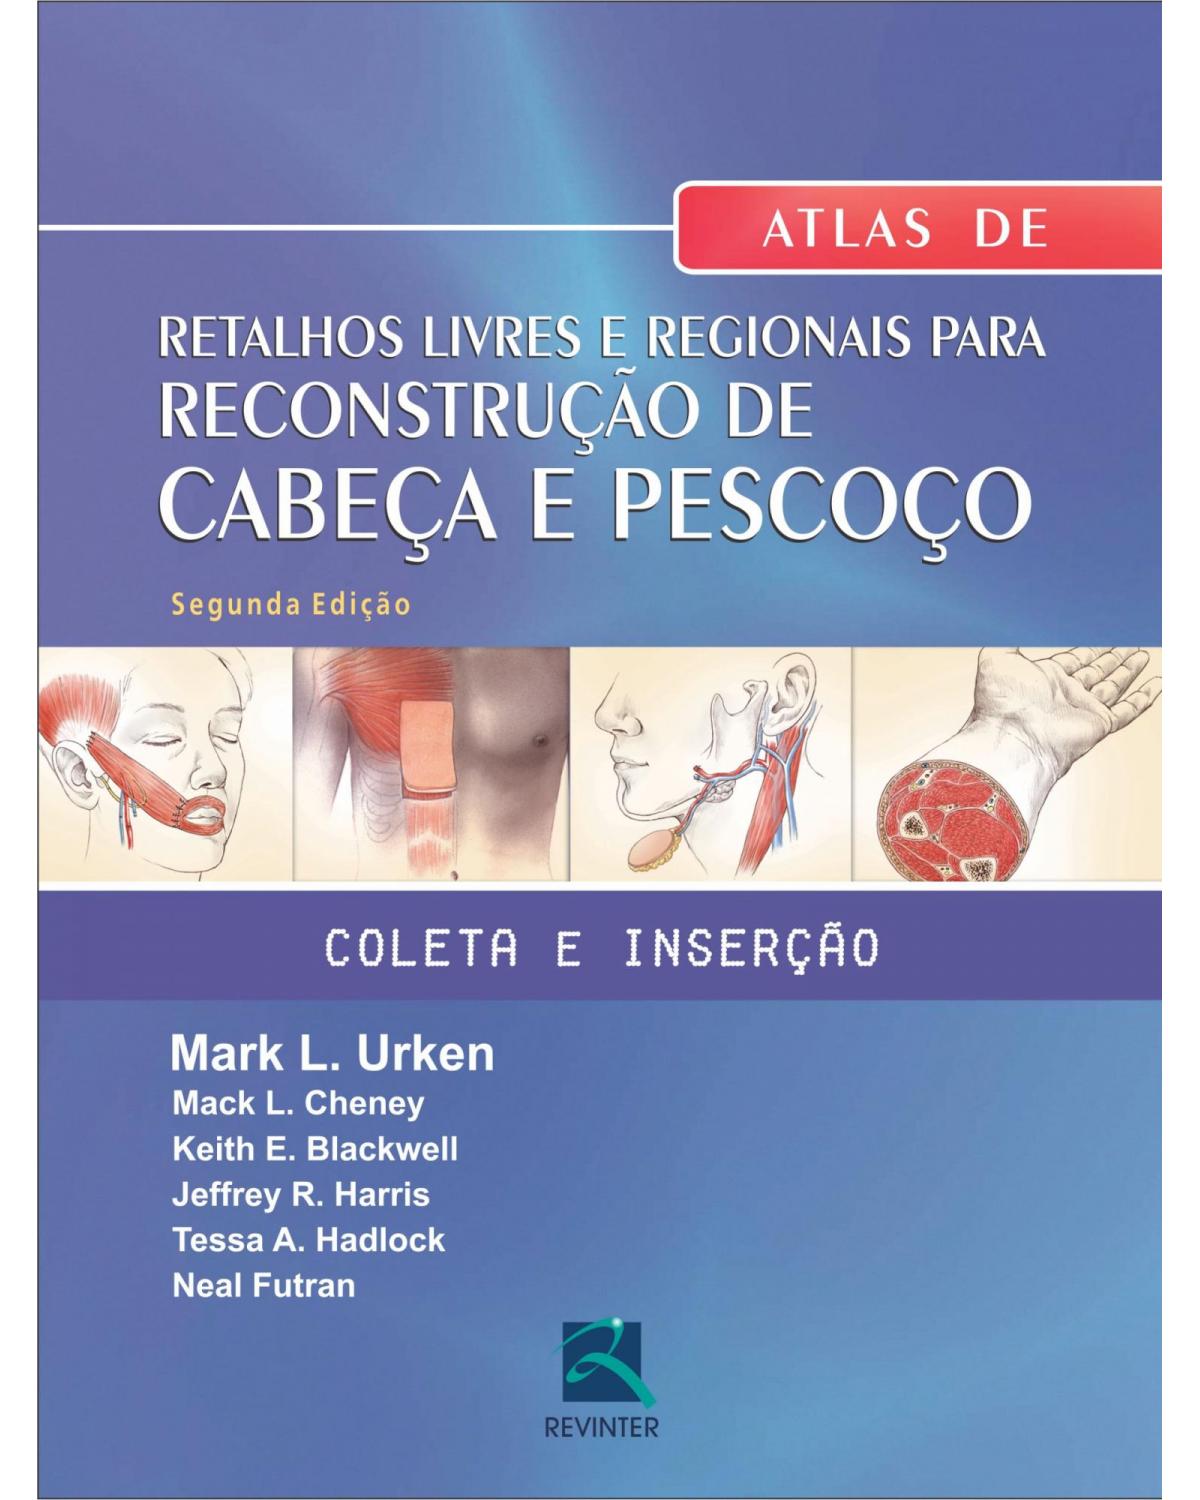 Atlas de retalhos livres e regionais para reconstrução de cabeça e pescoço: coleta e inserção - 2ª Edição | 2013